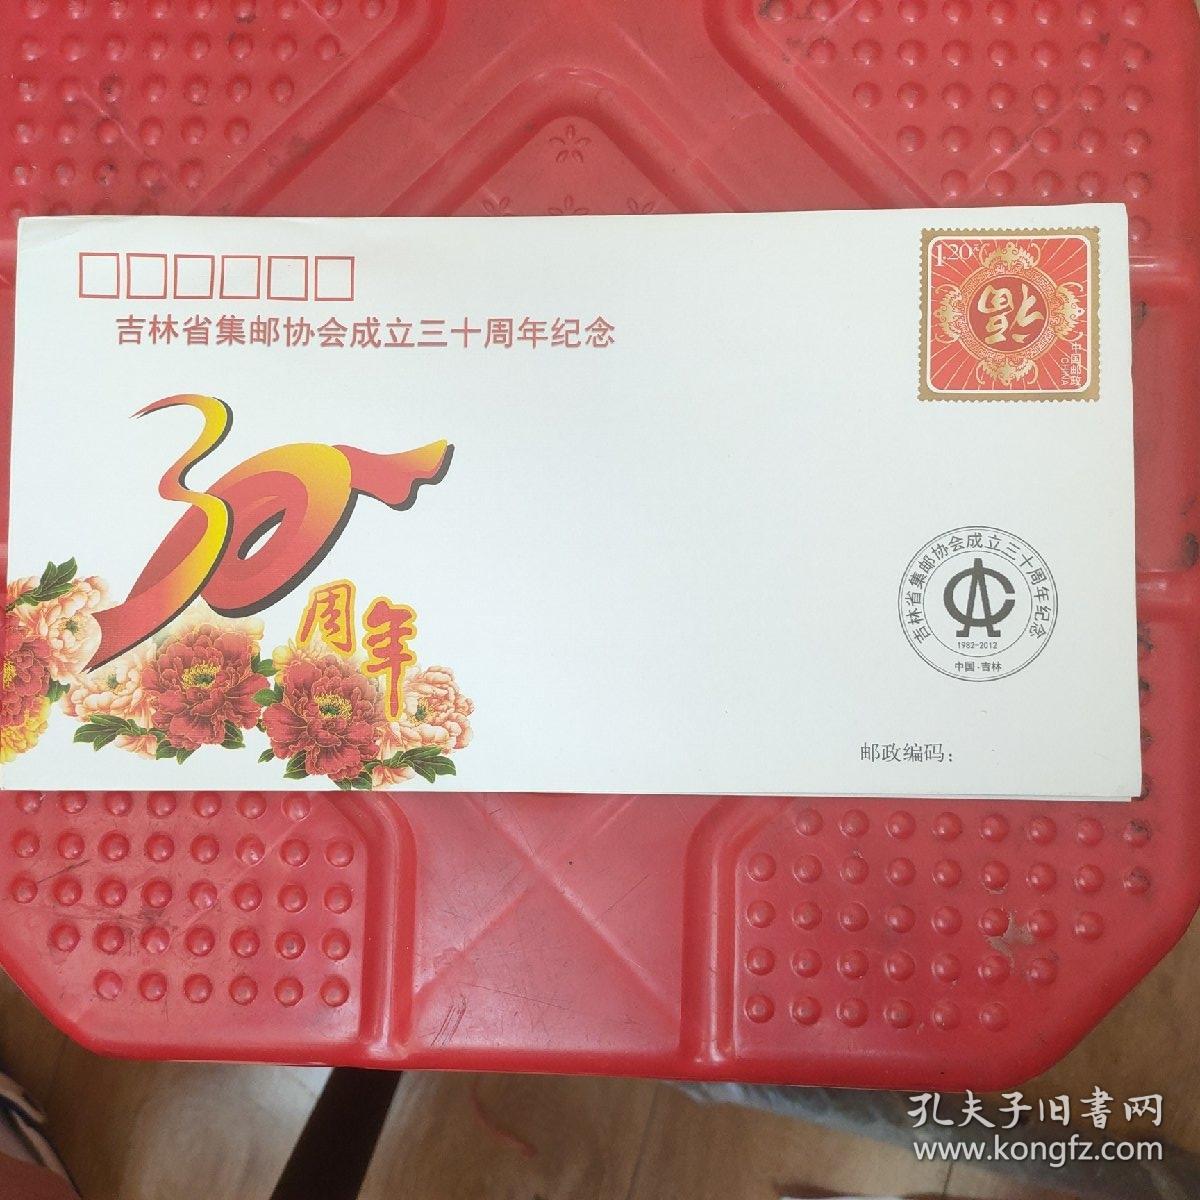 吉林省集邮协会成立三十周年纪念封